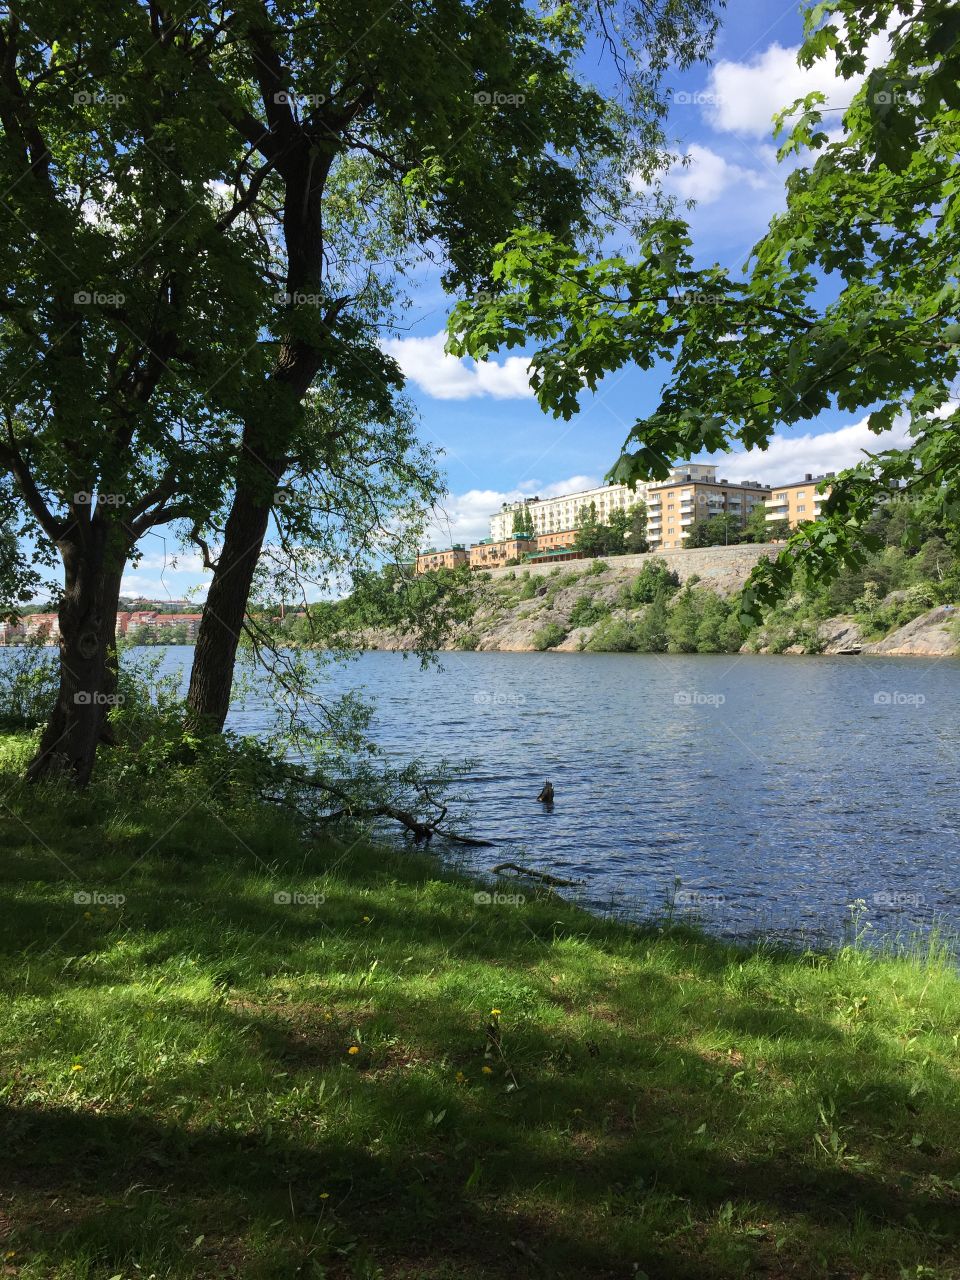 Summer in Stockholm